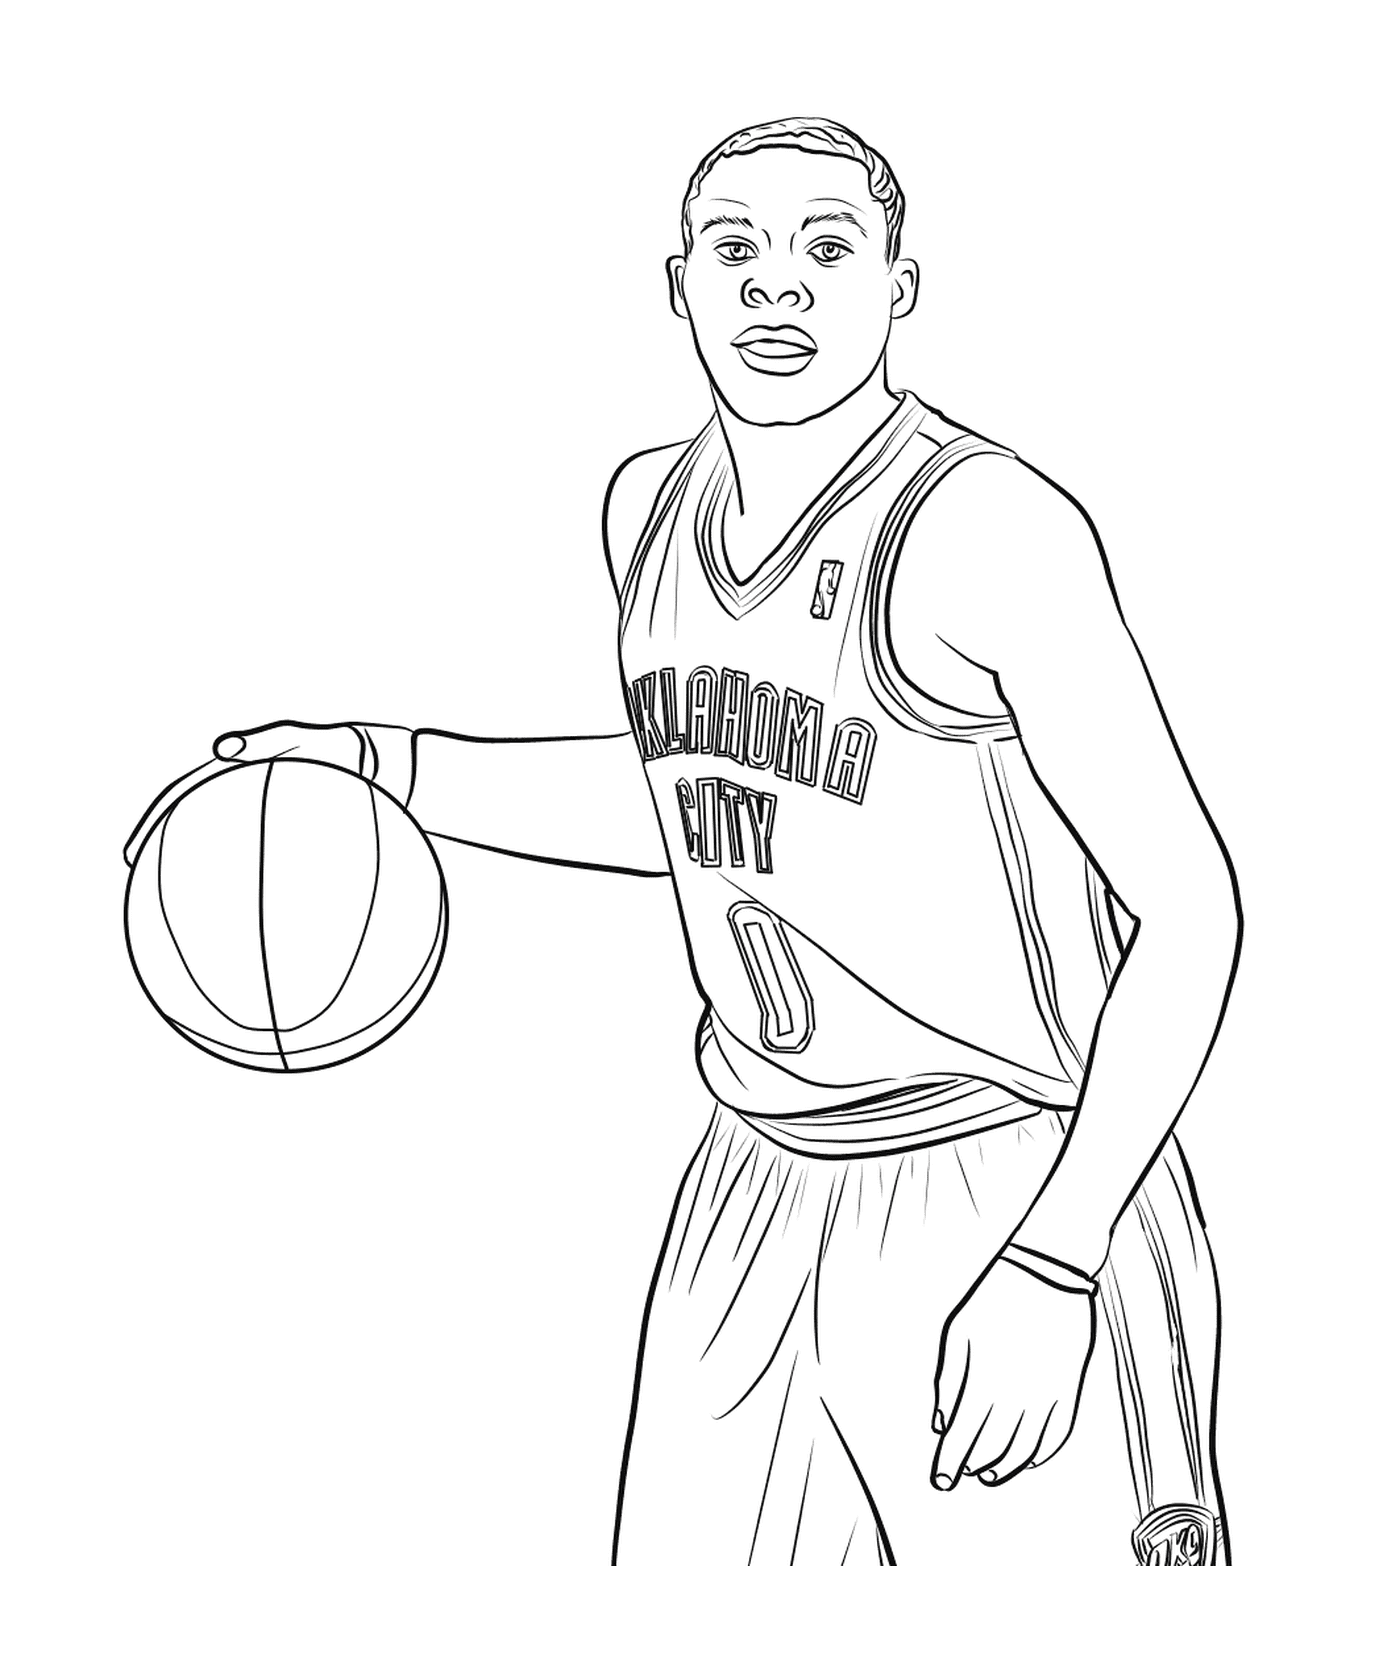  Russell Westbrook,篮球运动员 